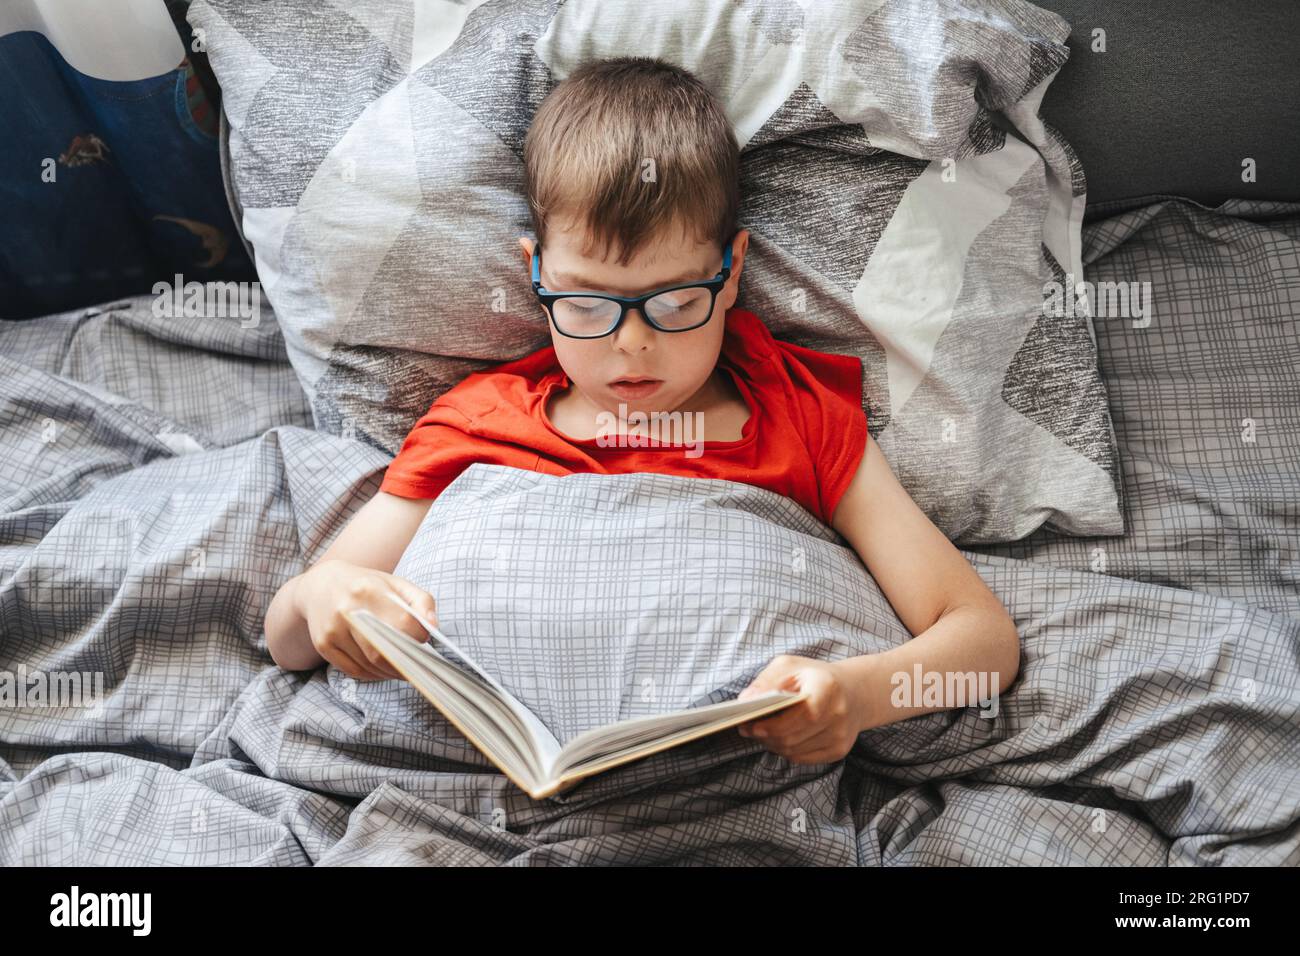 Ein Junge mit Brille liegt auf einem Bett unter einer Decke und liest ein Buch, Blick von oben. Ein Kind im Grundschulalter liest ein Buch in seinem Bett. Stockfoto